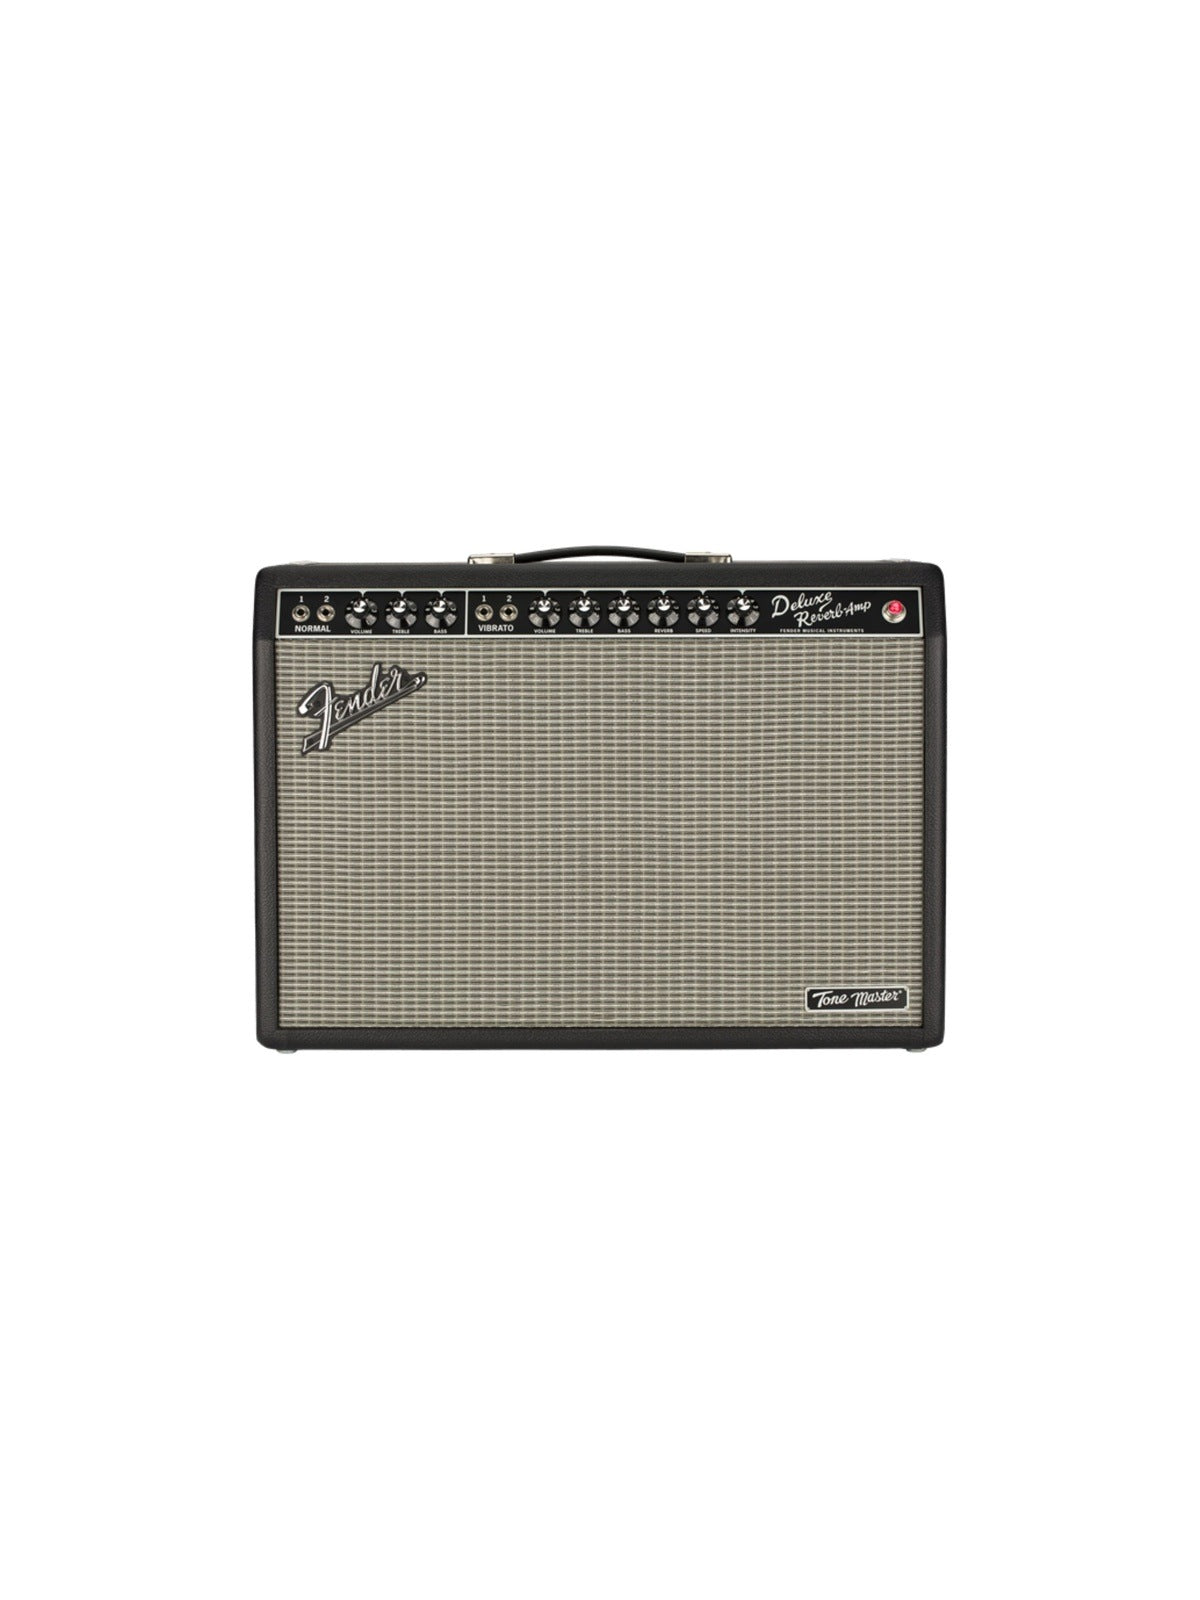 Fender Tone Master® Deluxe Reverb®, 230V EUR